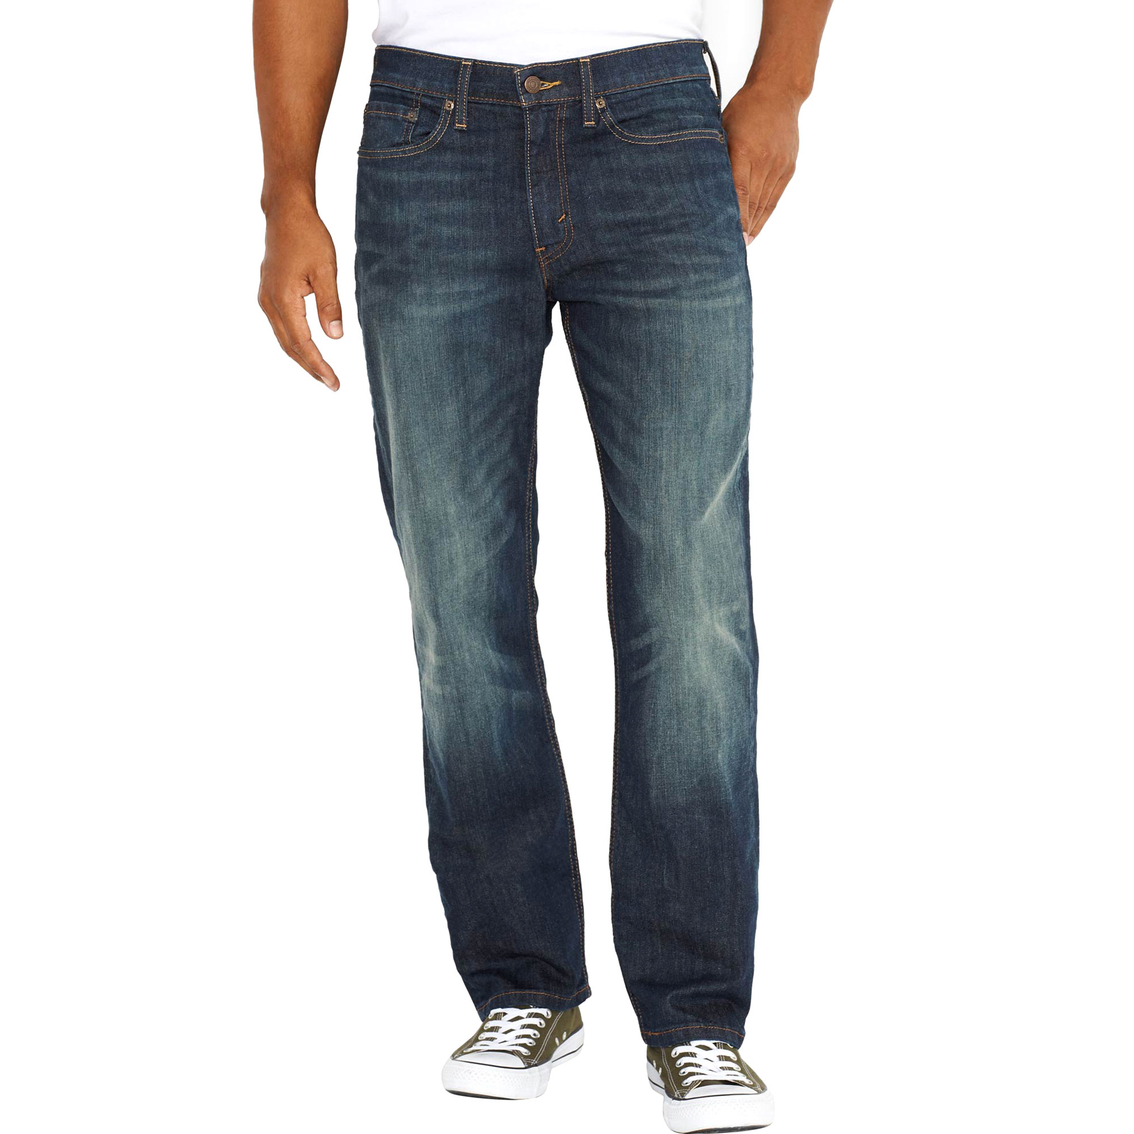 Levi's 514 5 Pocket Jeans | Jeans | Apparel | Shop The Exchange